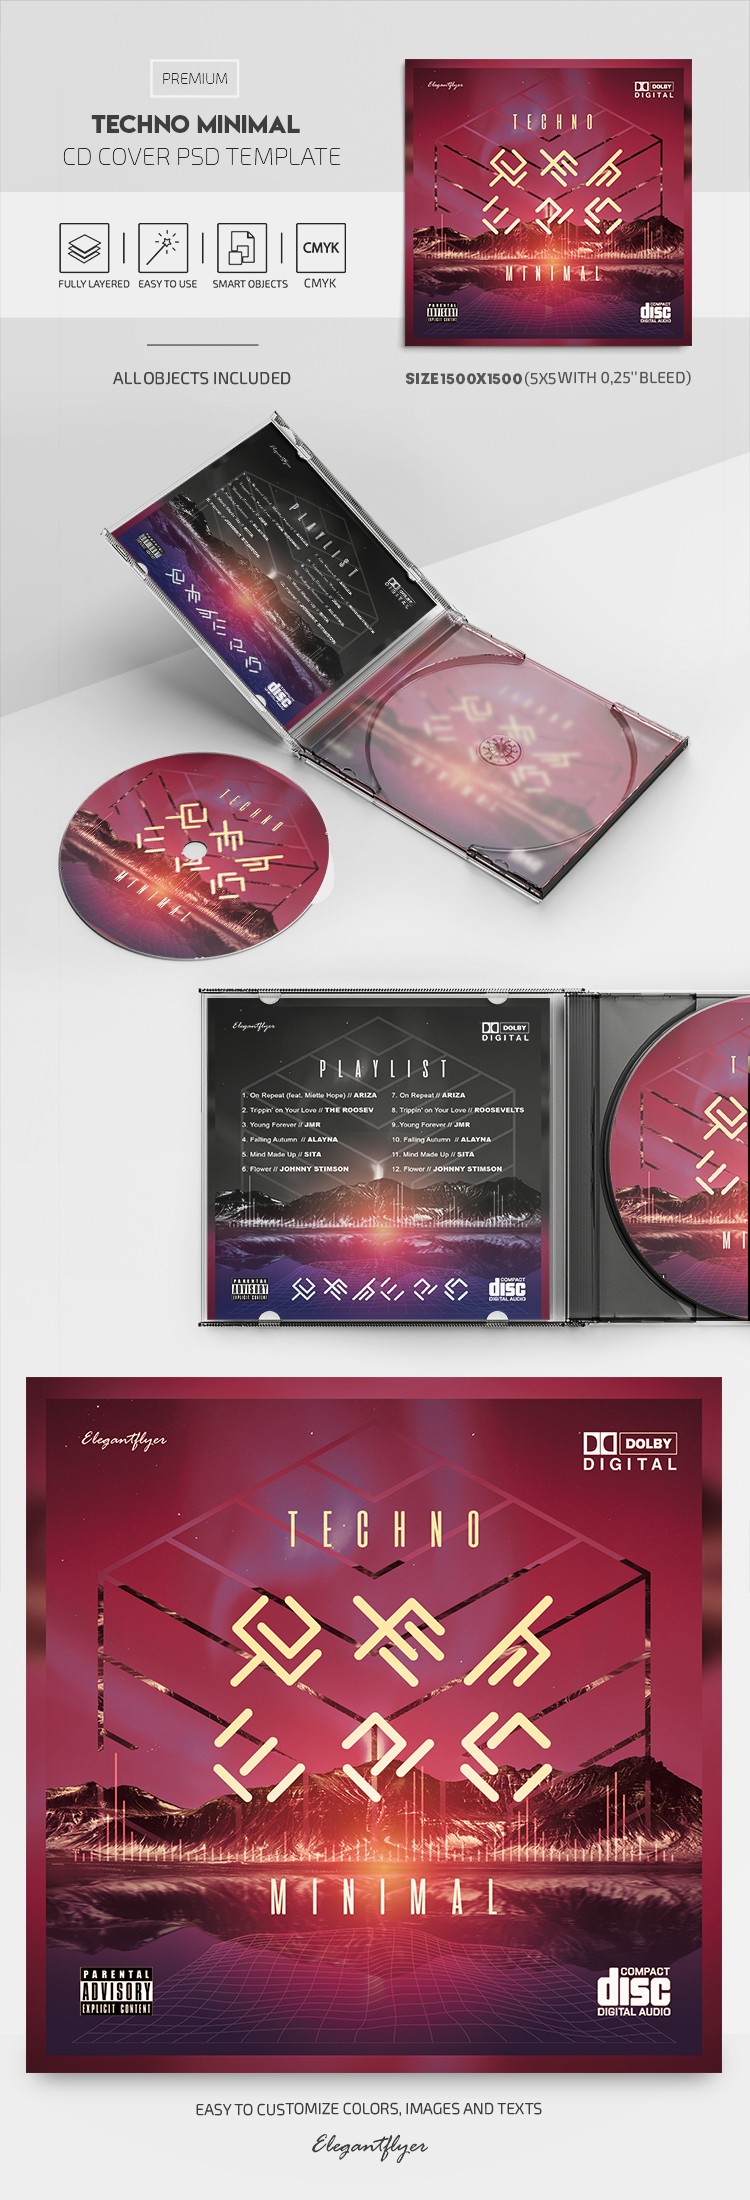 Techno Minimal CD Cover by ElegantFlyer